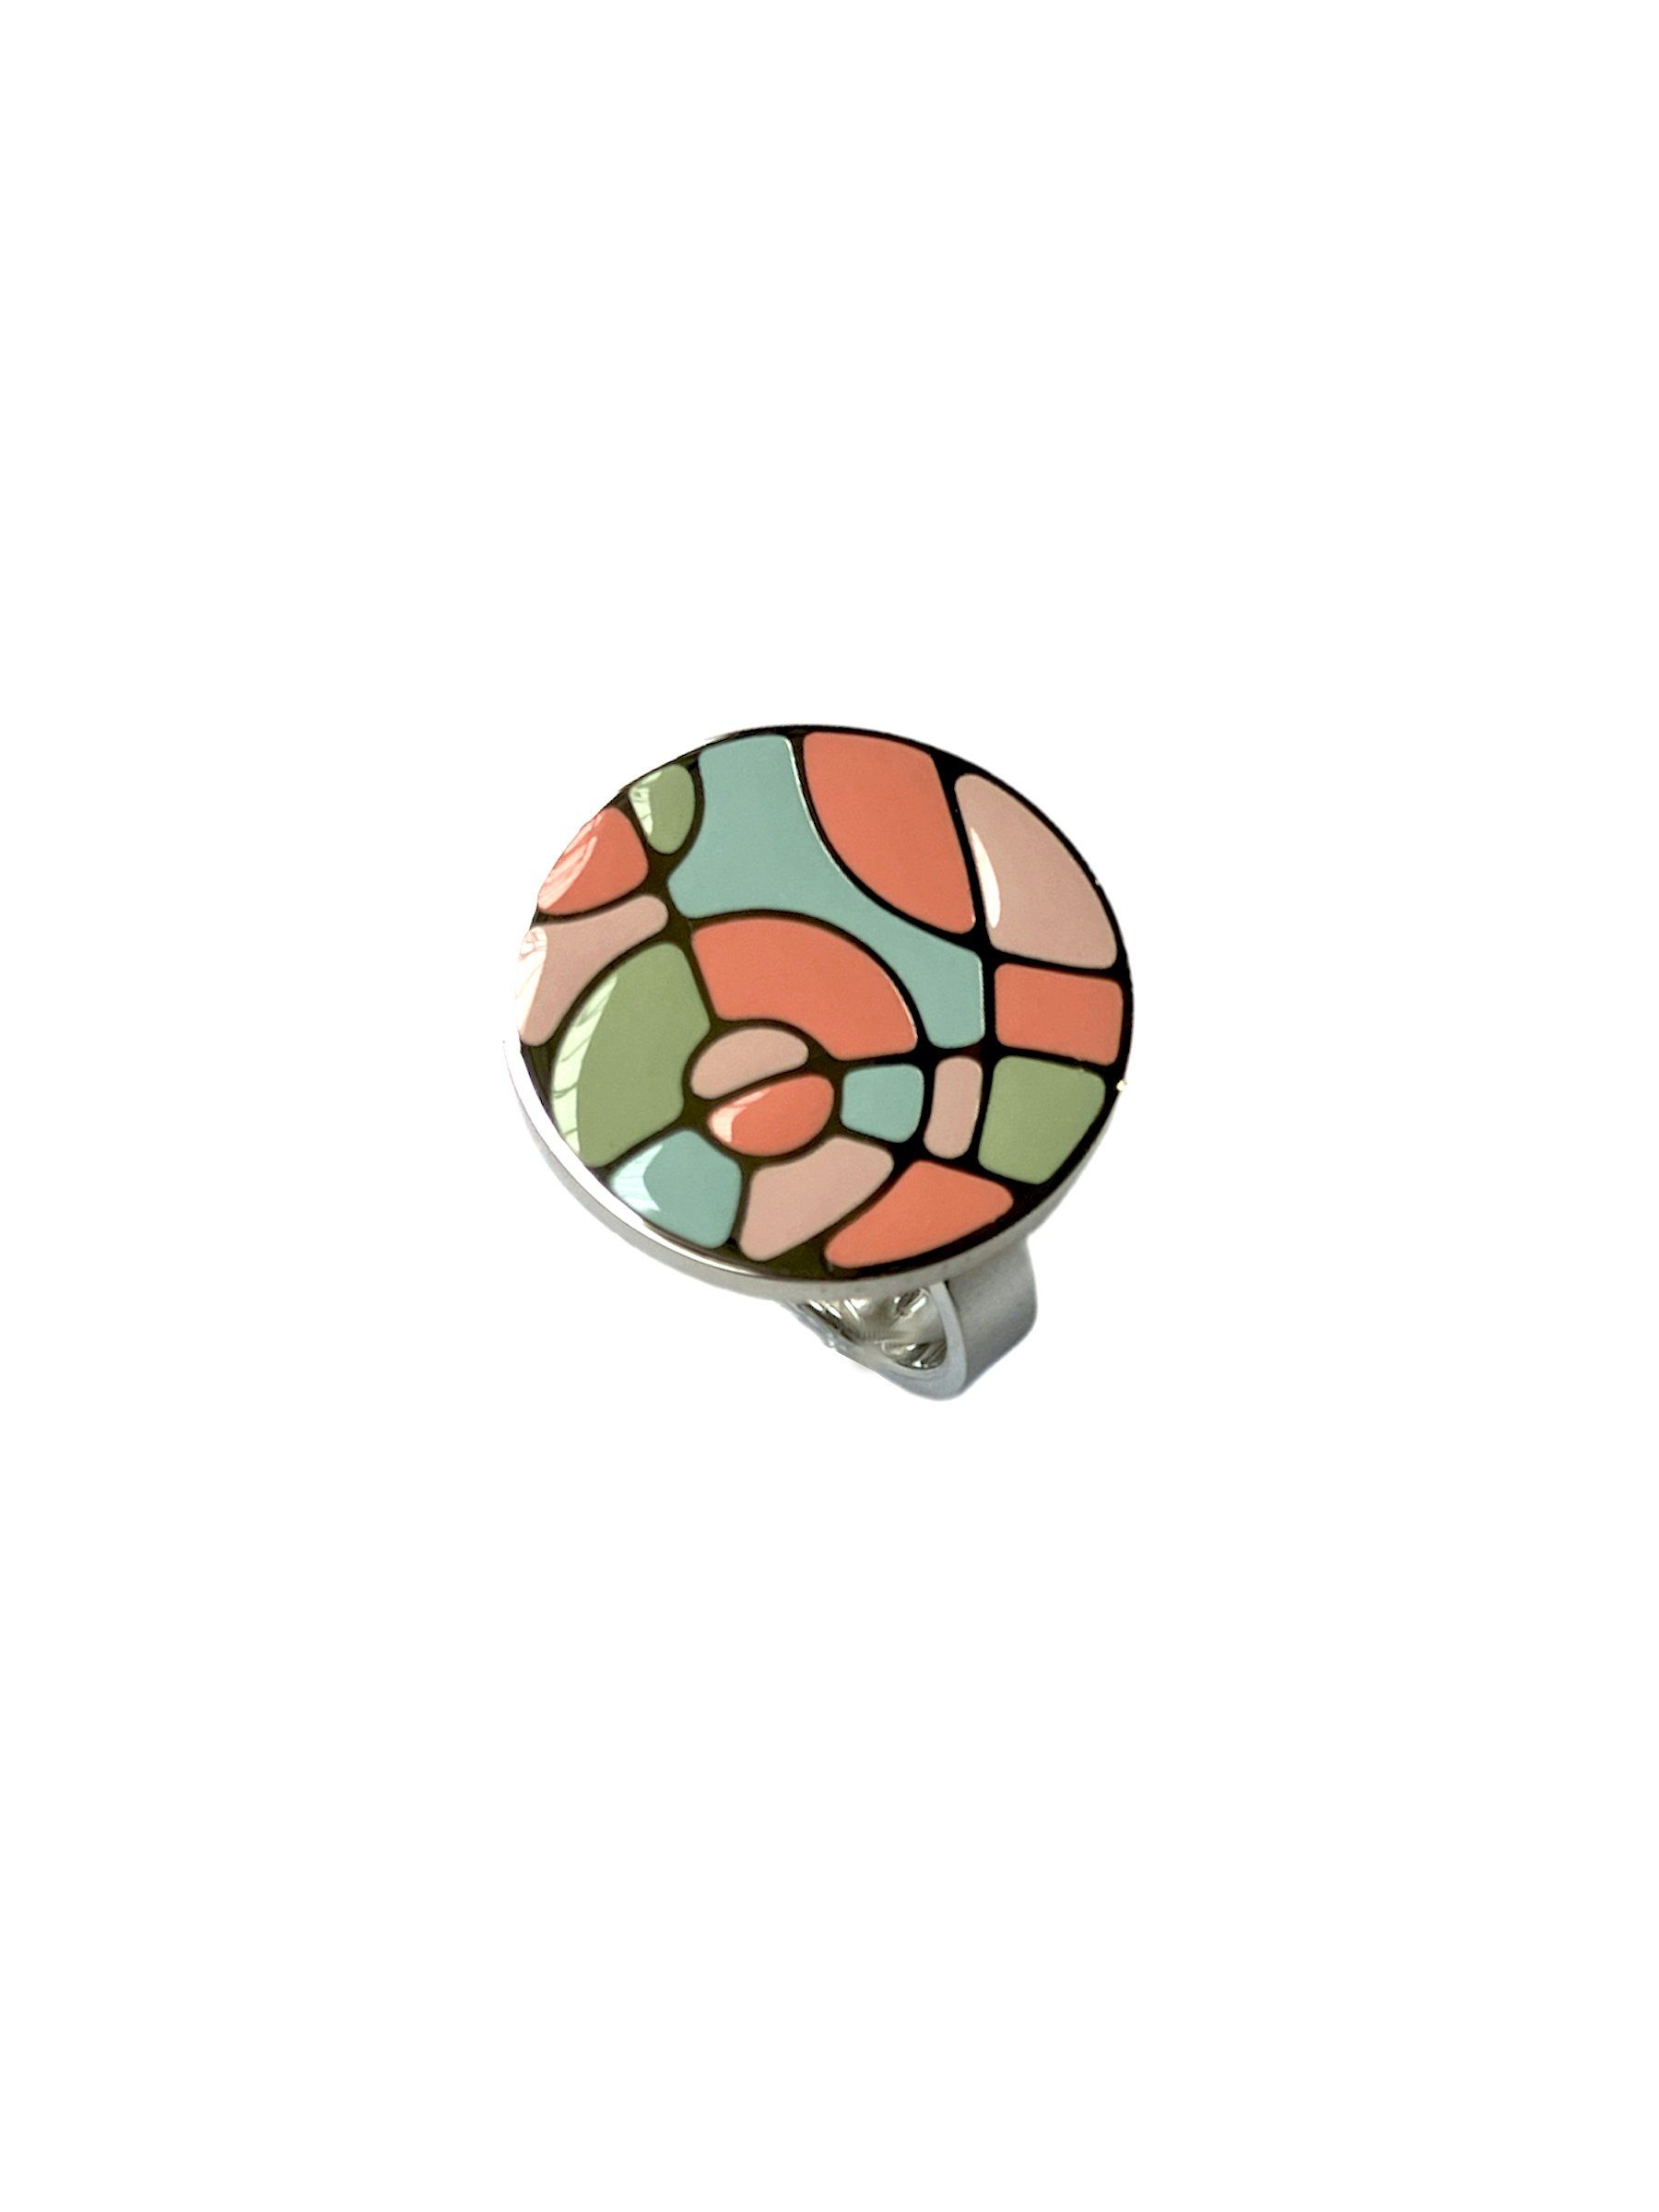 Swatch Bijoux Fingerring JRP029-8, Ringkopf im Mosaik-Style mit Pastellfarben